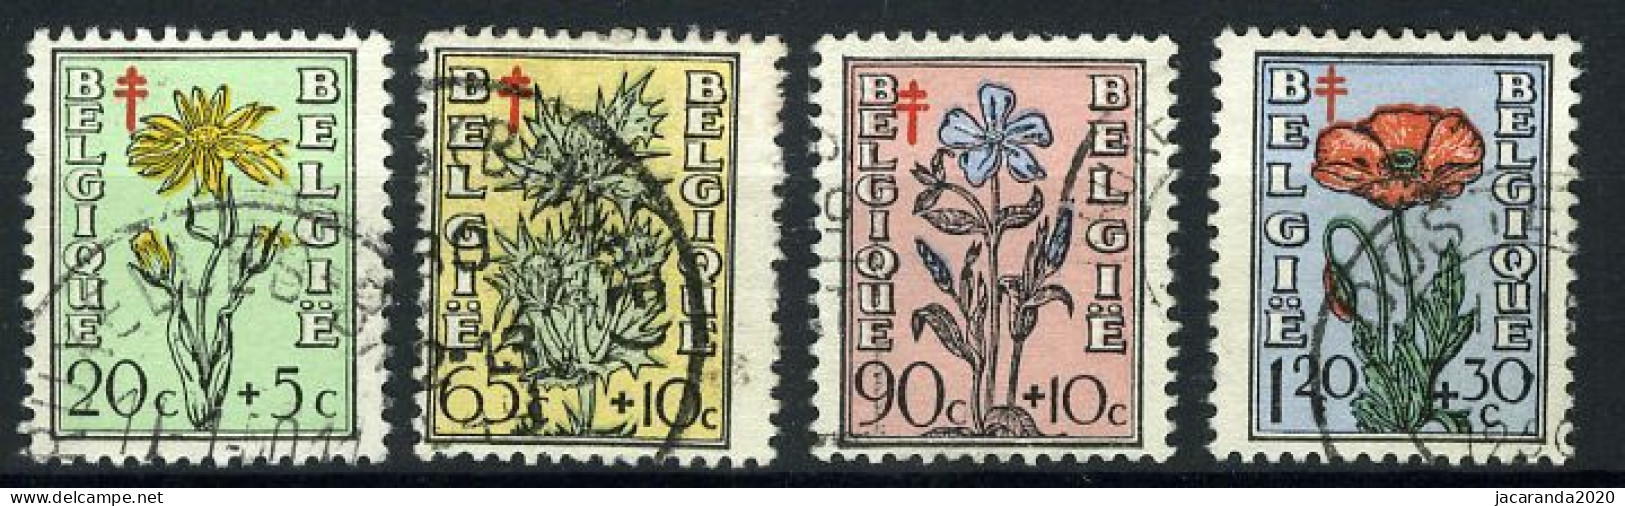 België 814/17 - Antitering - Bloemen - Portretten Van De Senaat IV - Gestempeld - Oblitéré - Used - Oblitérés